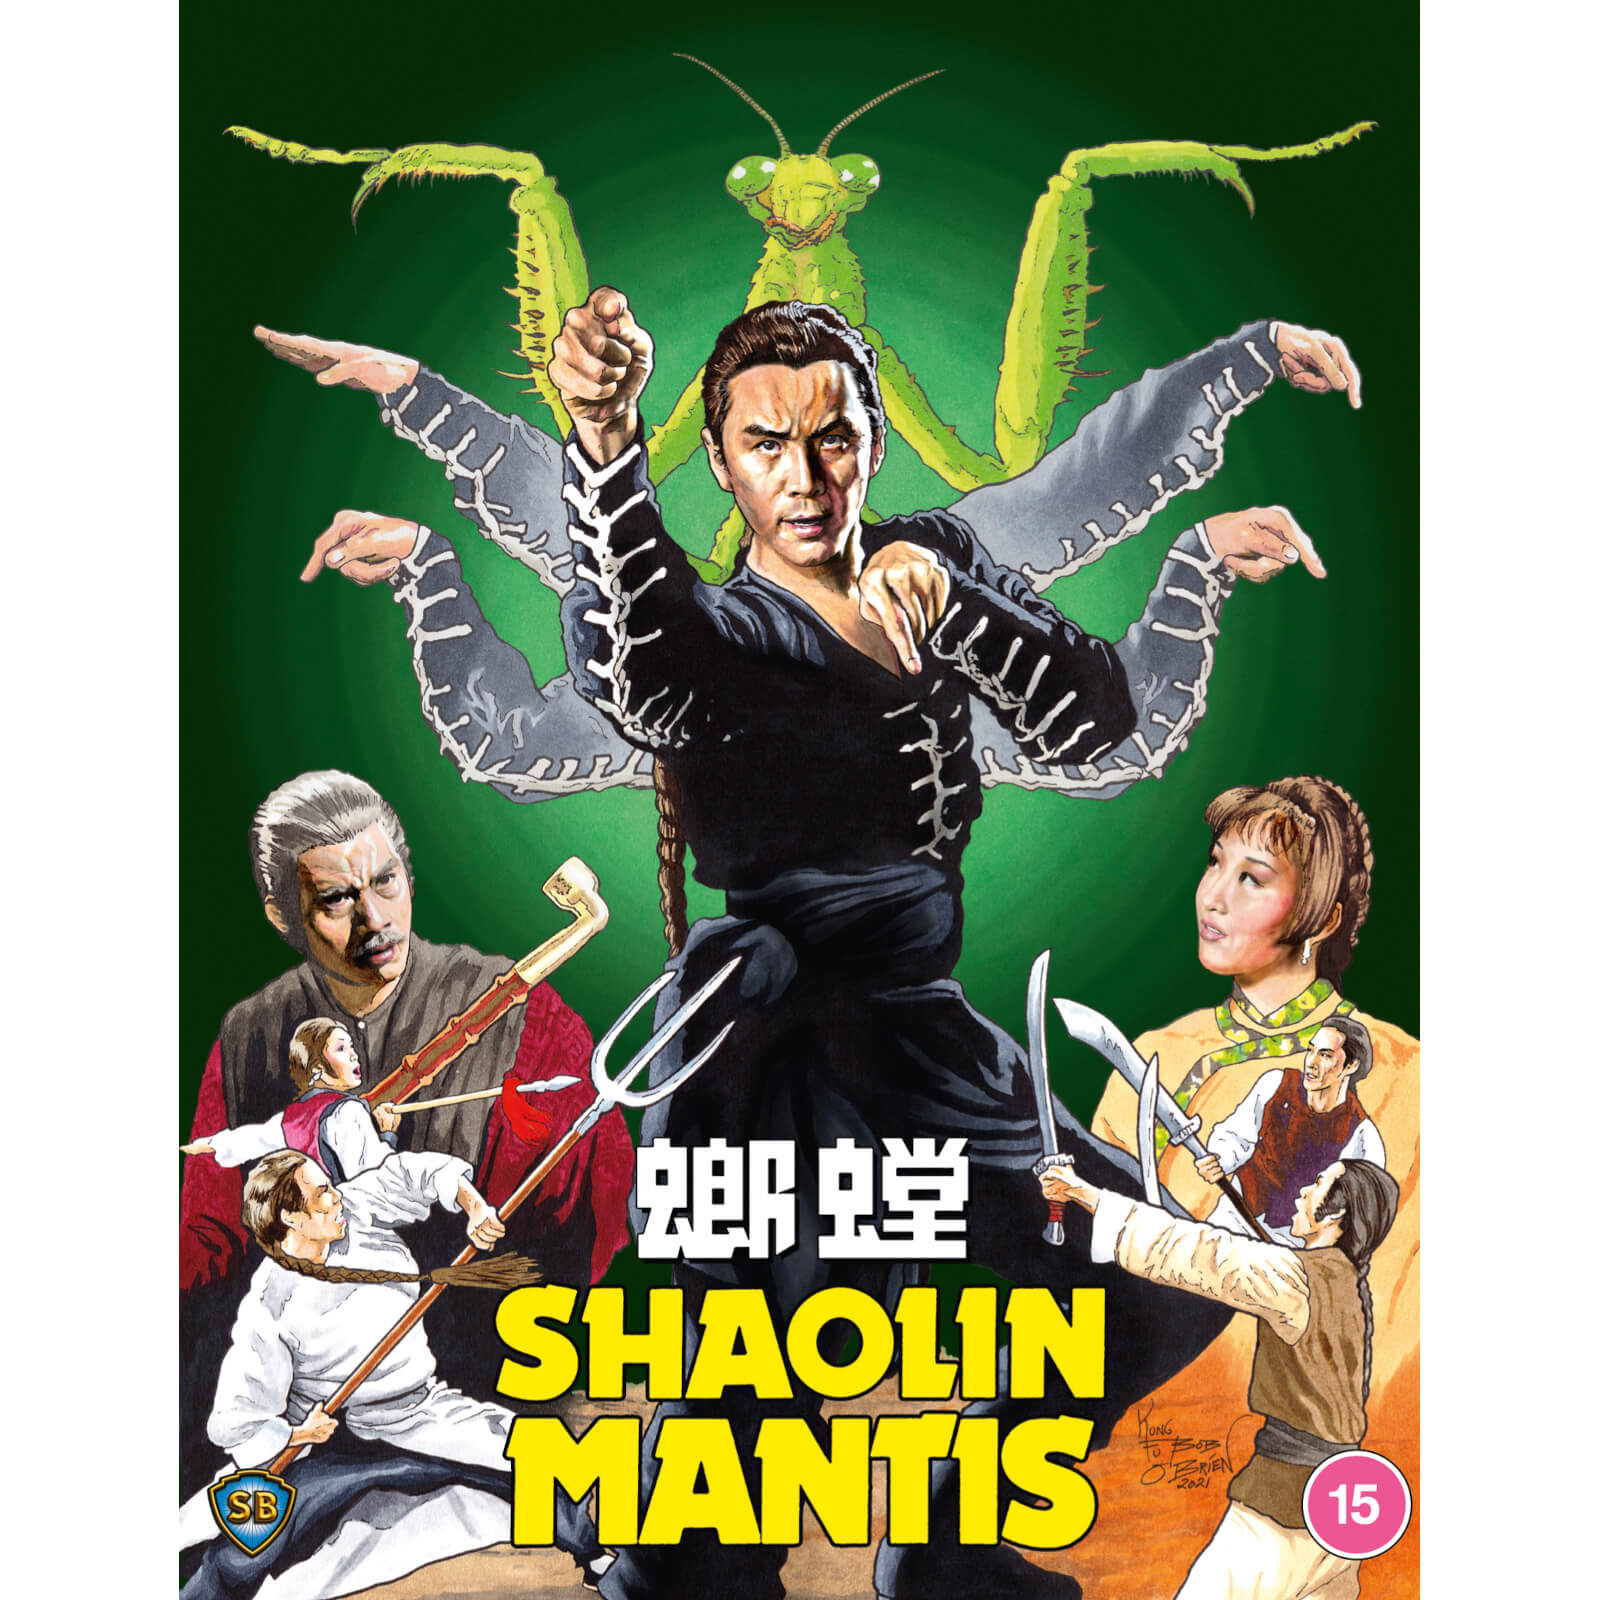 Shaolin Mantis von 88 Films